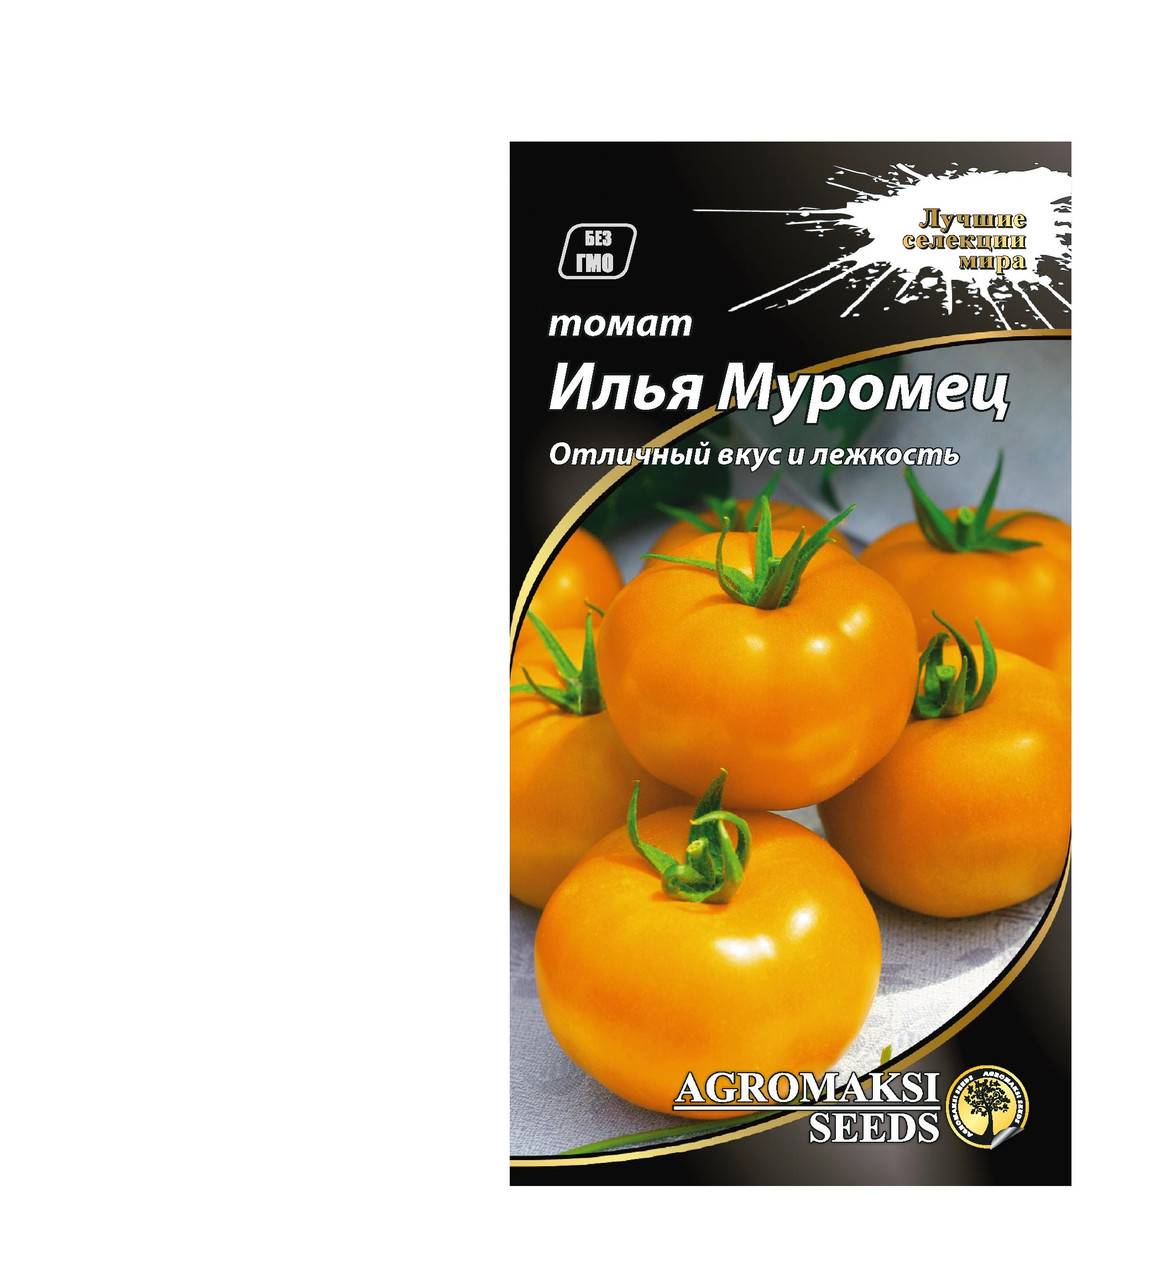 Илья муромец: описание сорта томата, характеристики помидоров, посев